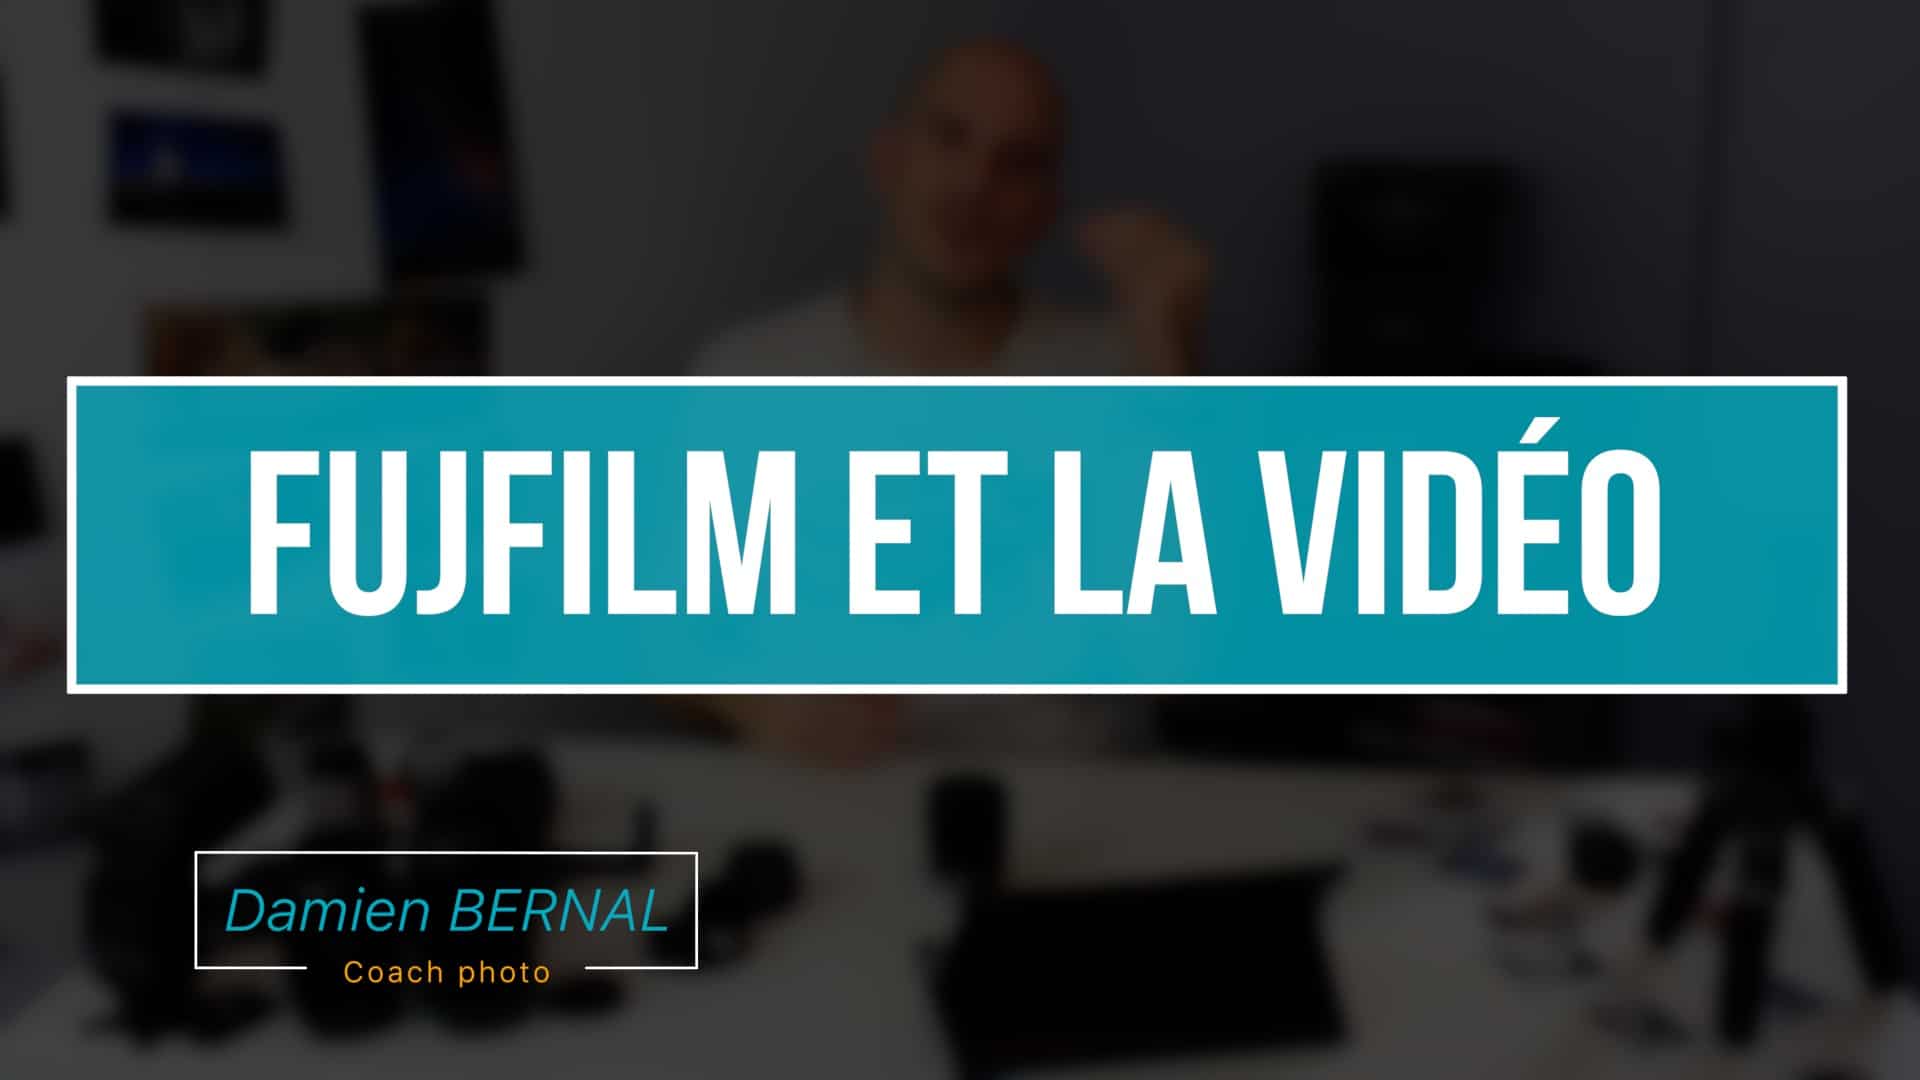 Fujifilm et Vidéo avis